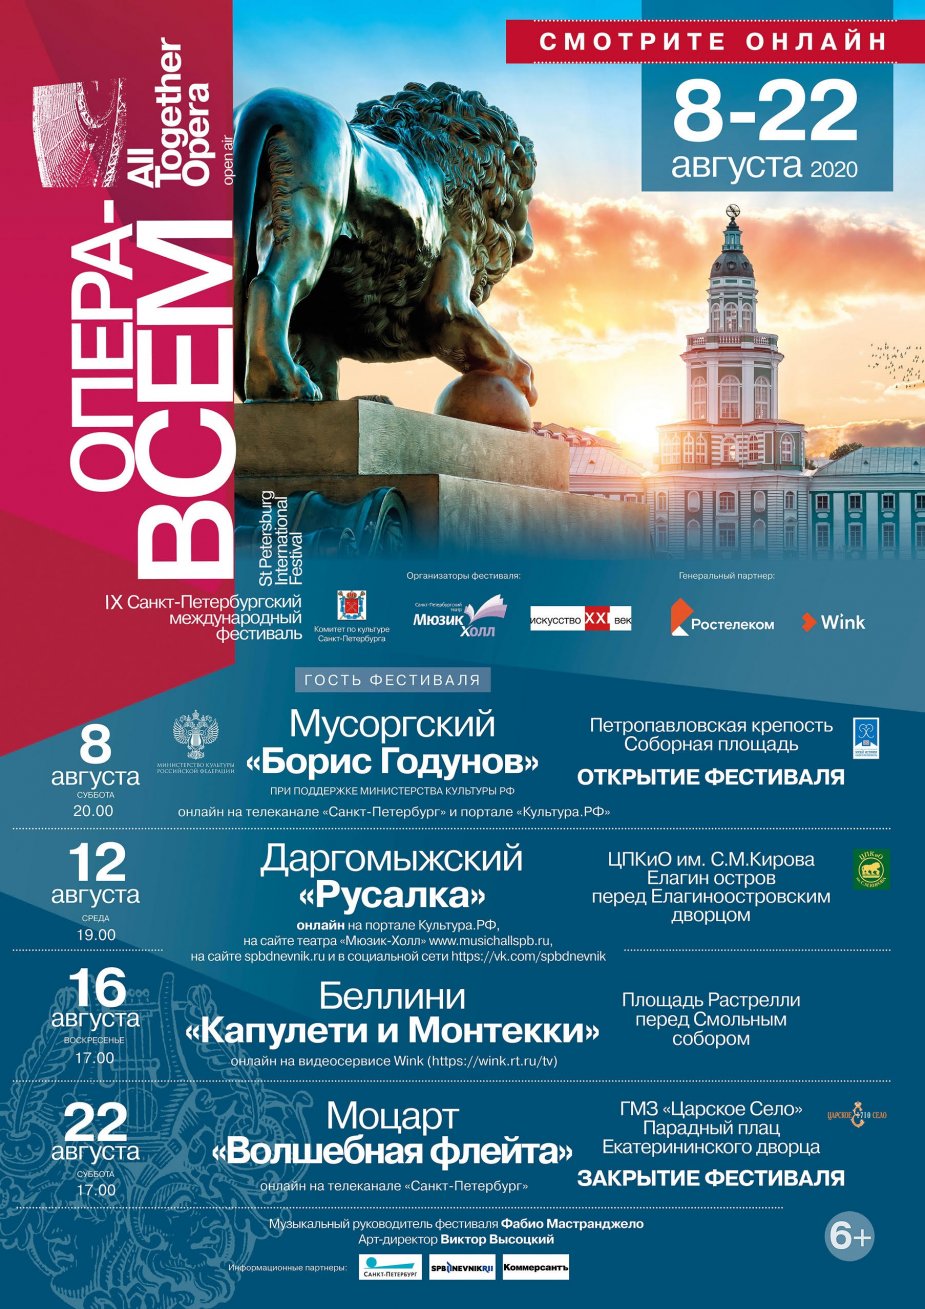 IX Санкт-Петербургский международный фестиваль «Опера – всем» открывается